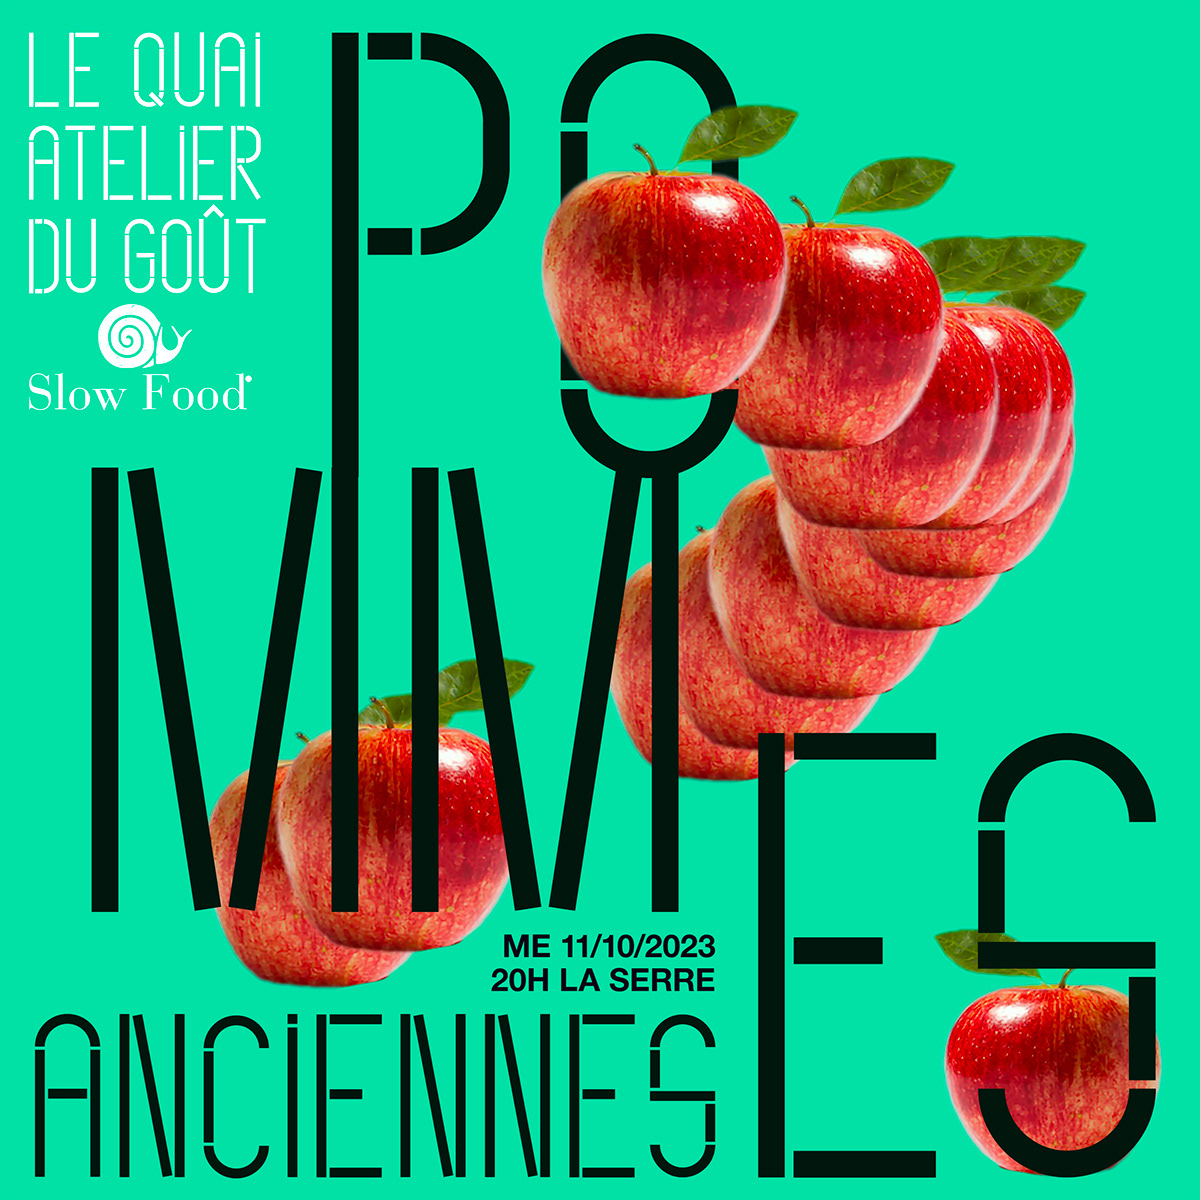 Atelier du goût "Pommes anciennes" 

Le Quai - Angers avec Slowfood France